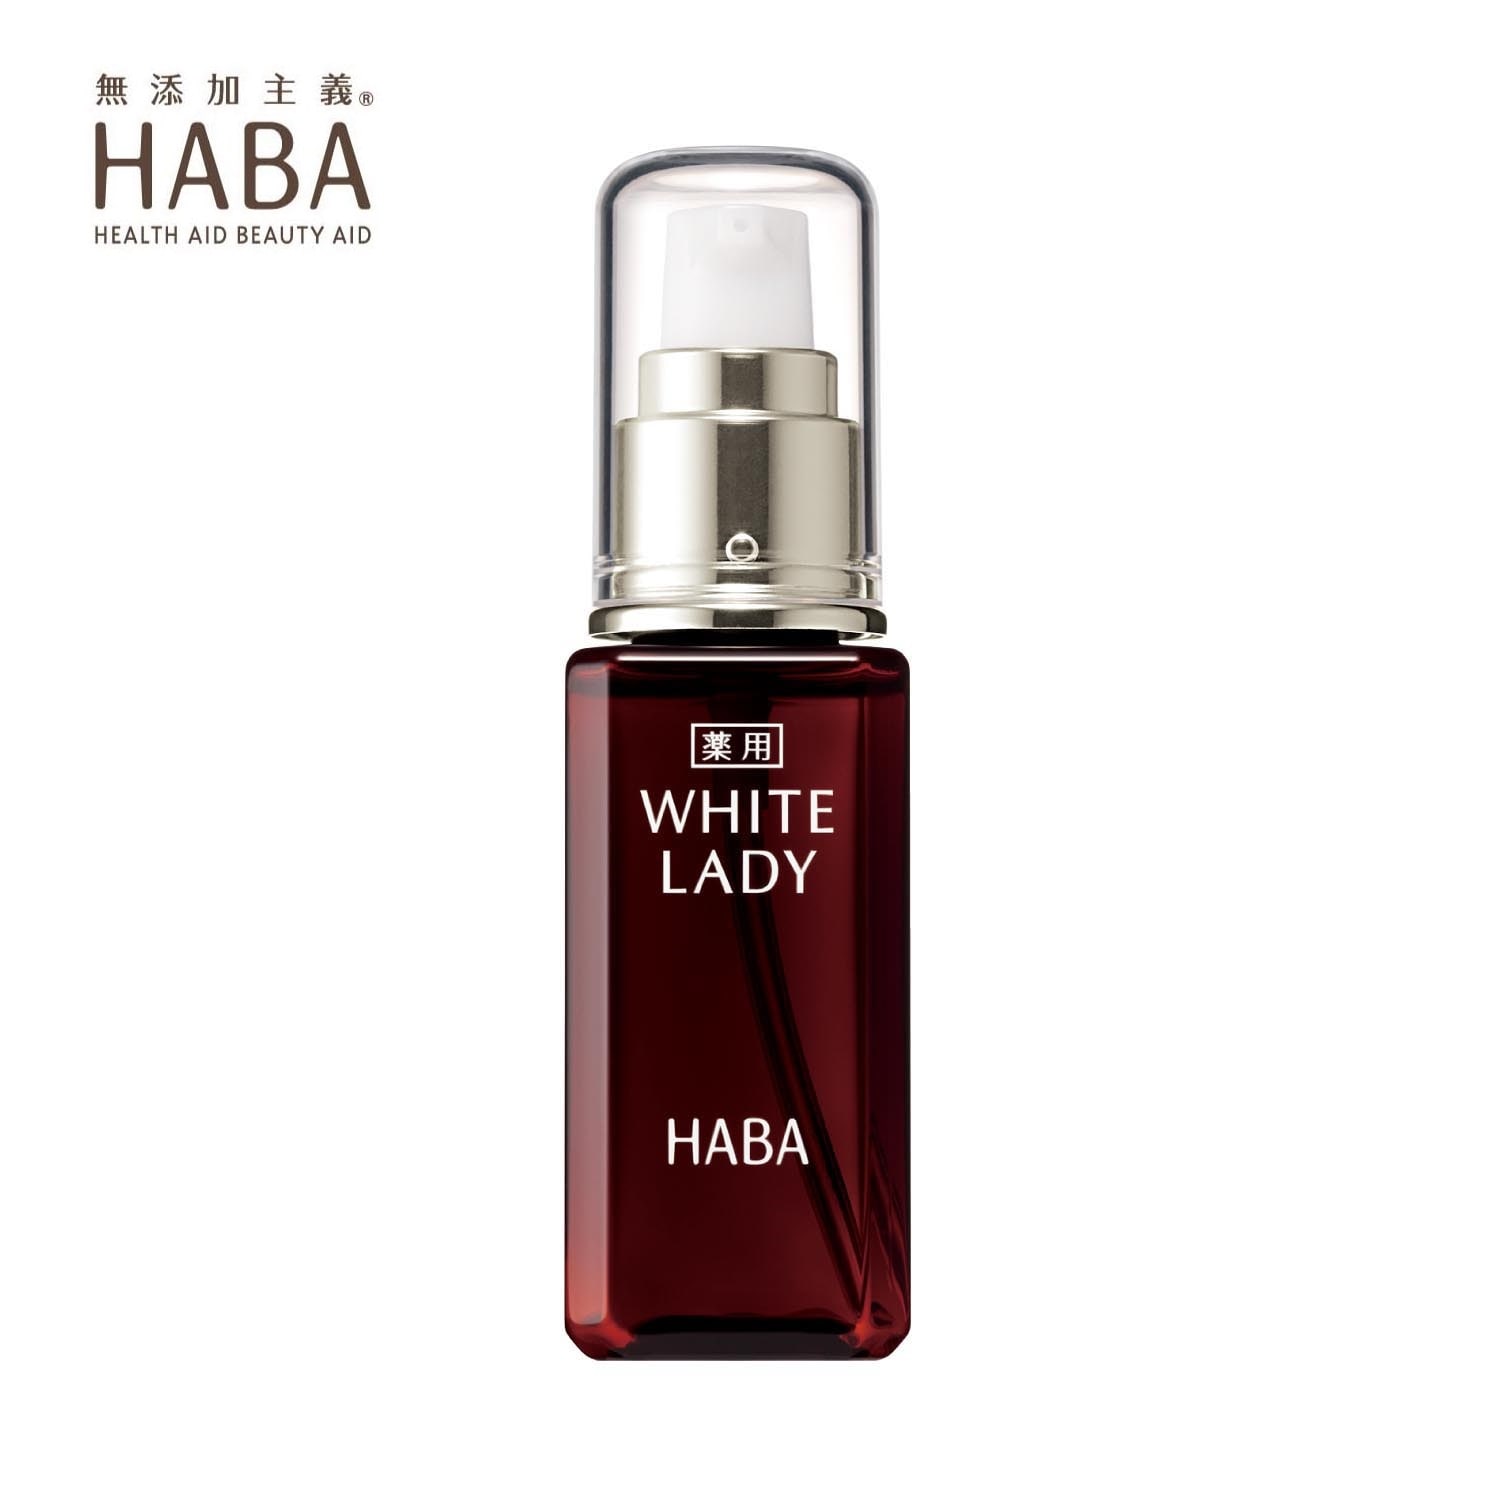 【新品未使用】HABA ハーバー 薬用ホワイトレディ 60ml 美容液